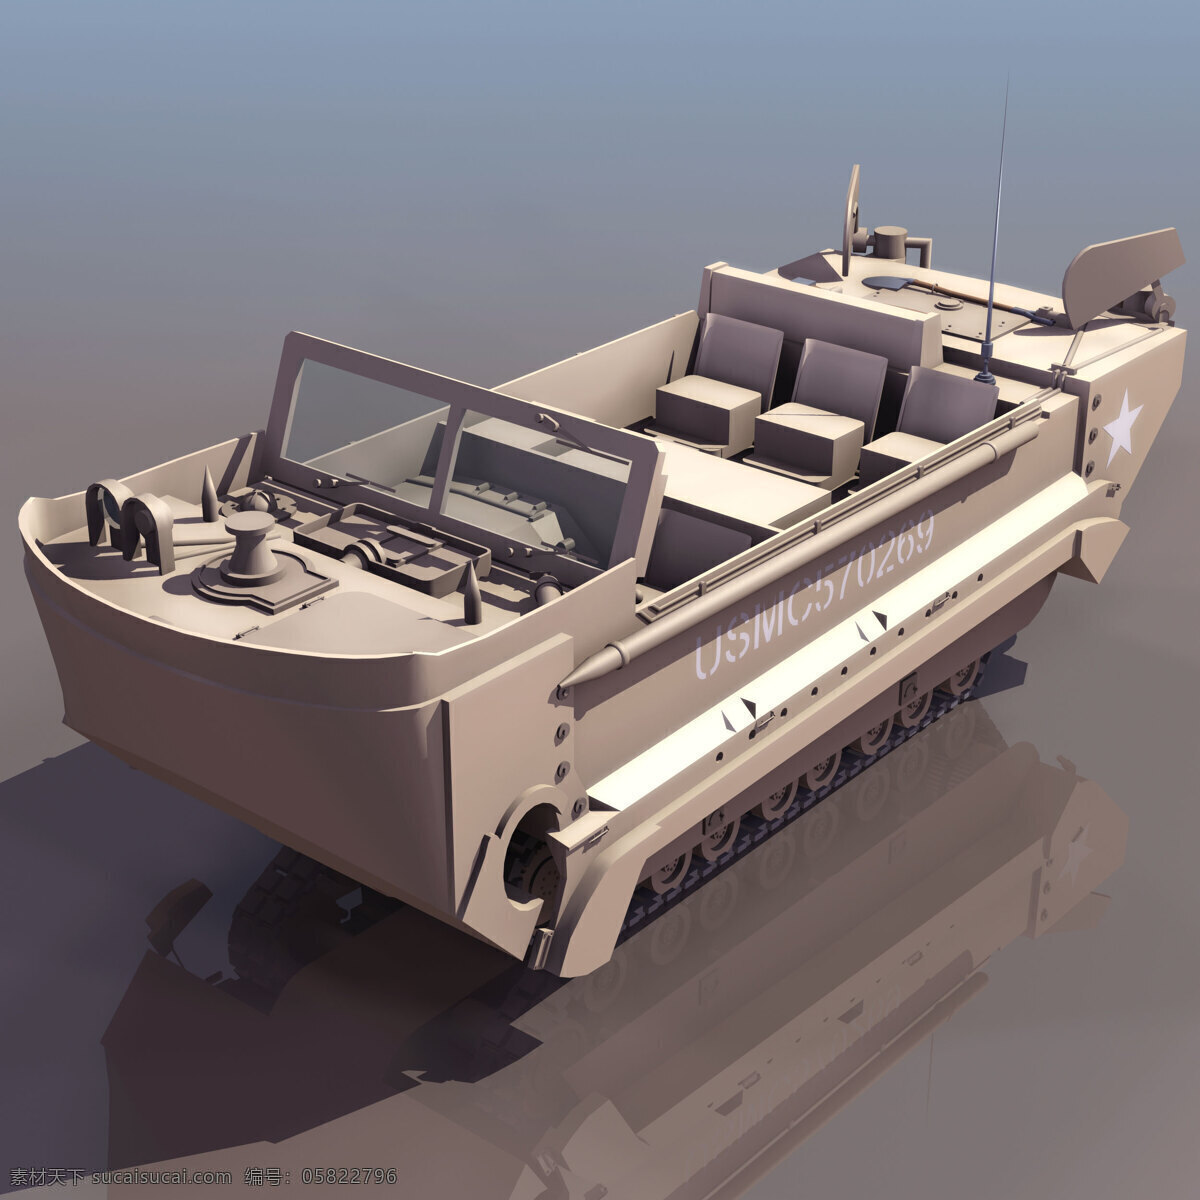 水陆 两栖 装甲车 船 汽车 武装 运输 多人 装载 3d模型素材 其他3d模型